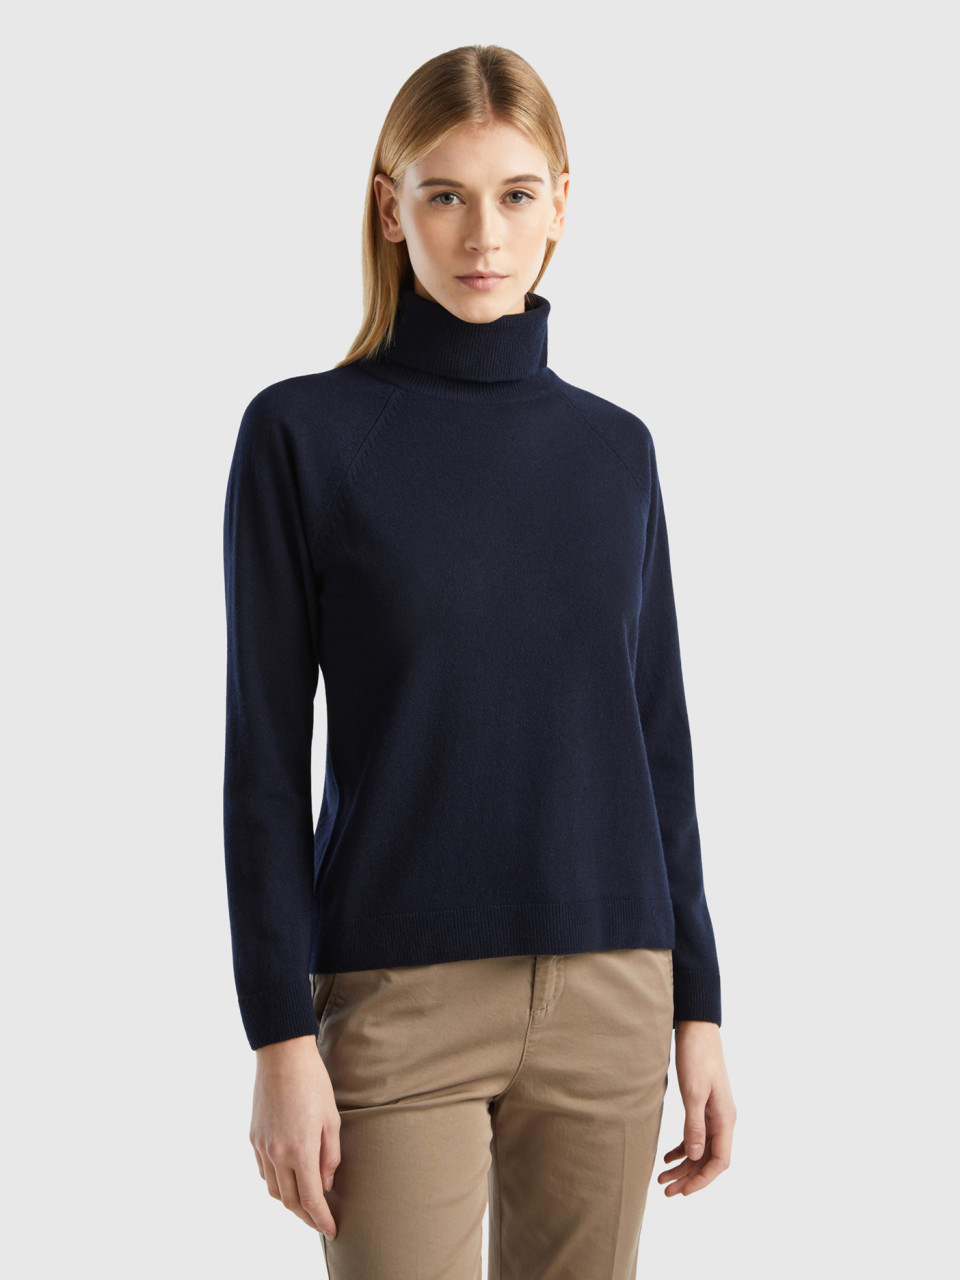 Benetton, Dark Blue Turtleneck Sweater In Cashmere And Wool Blend, Dark Blue, Women